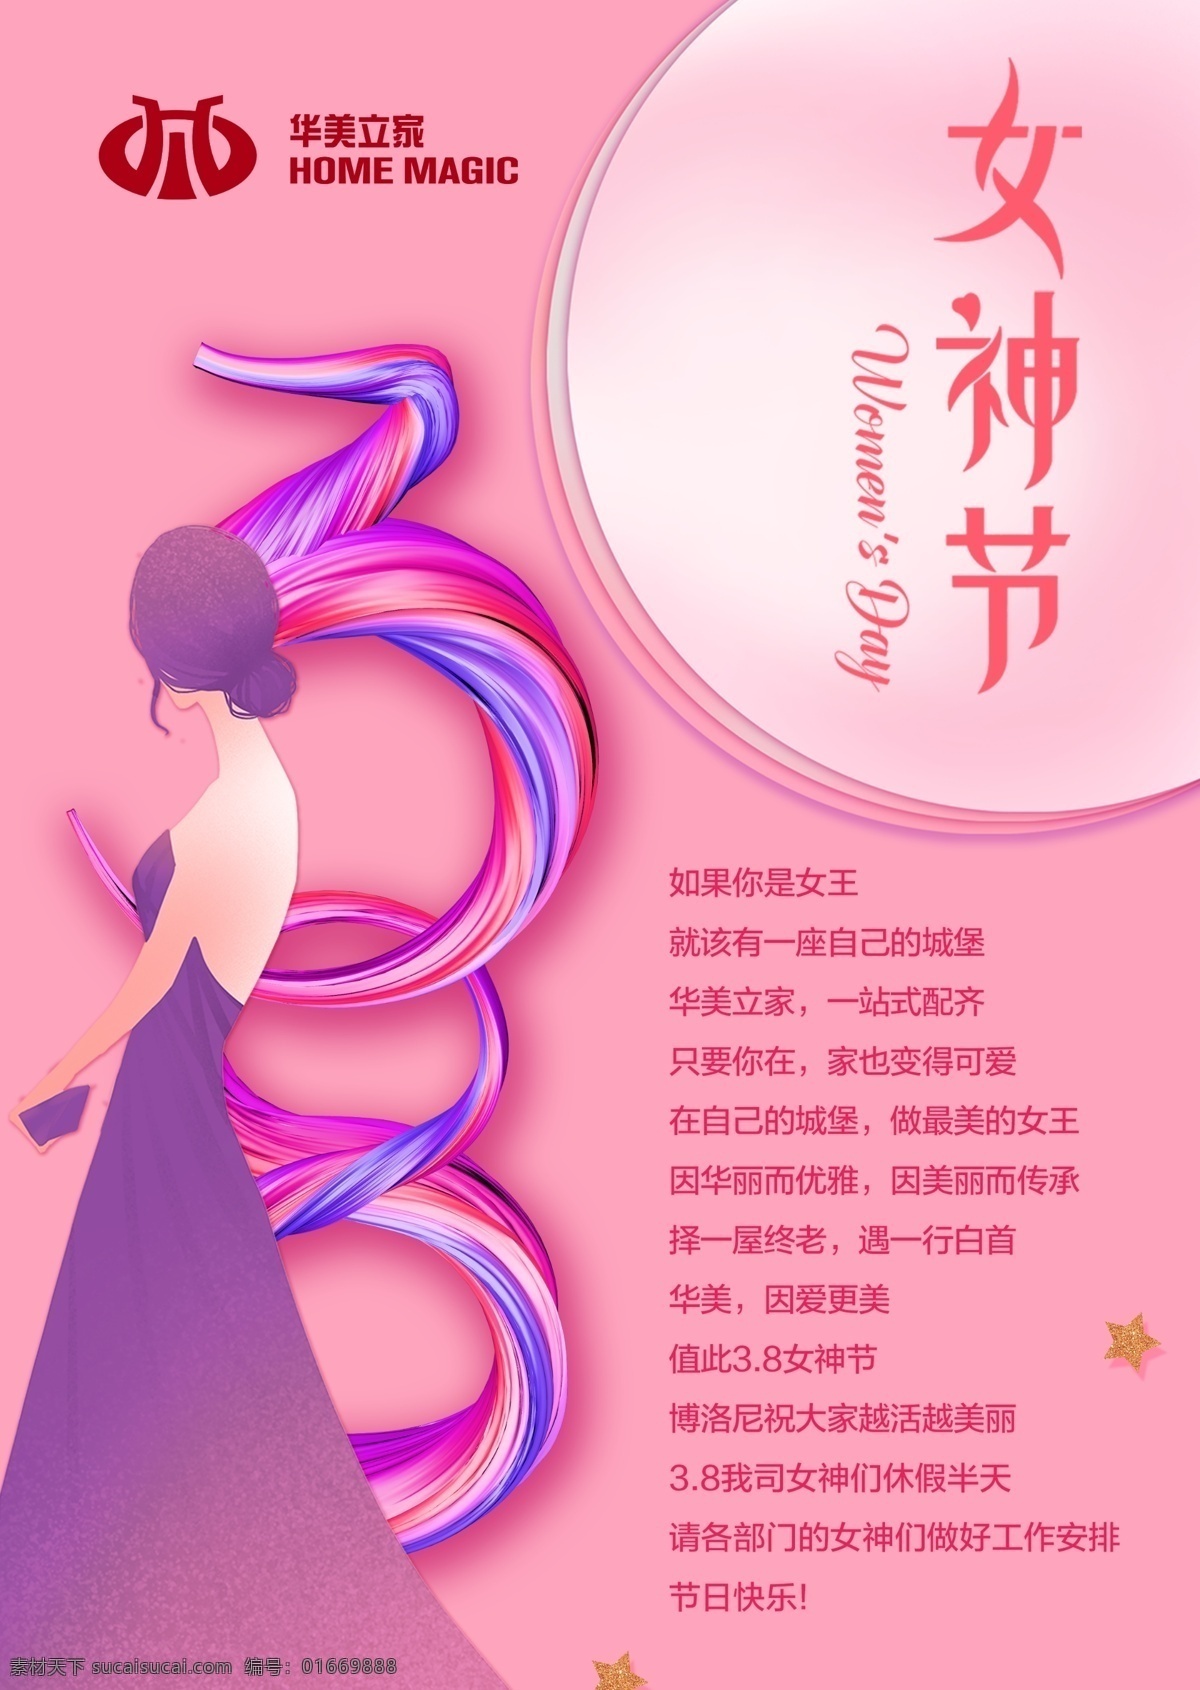 妇女节 38 女王节 女神节 女王 美女 女神 文化艺术 节日庆祝